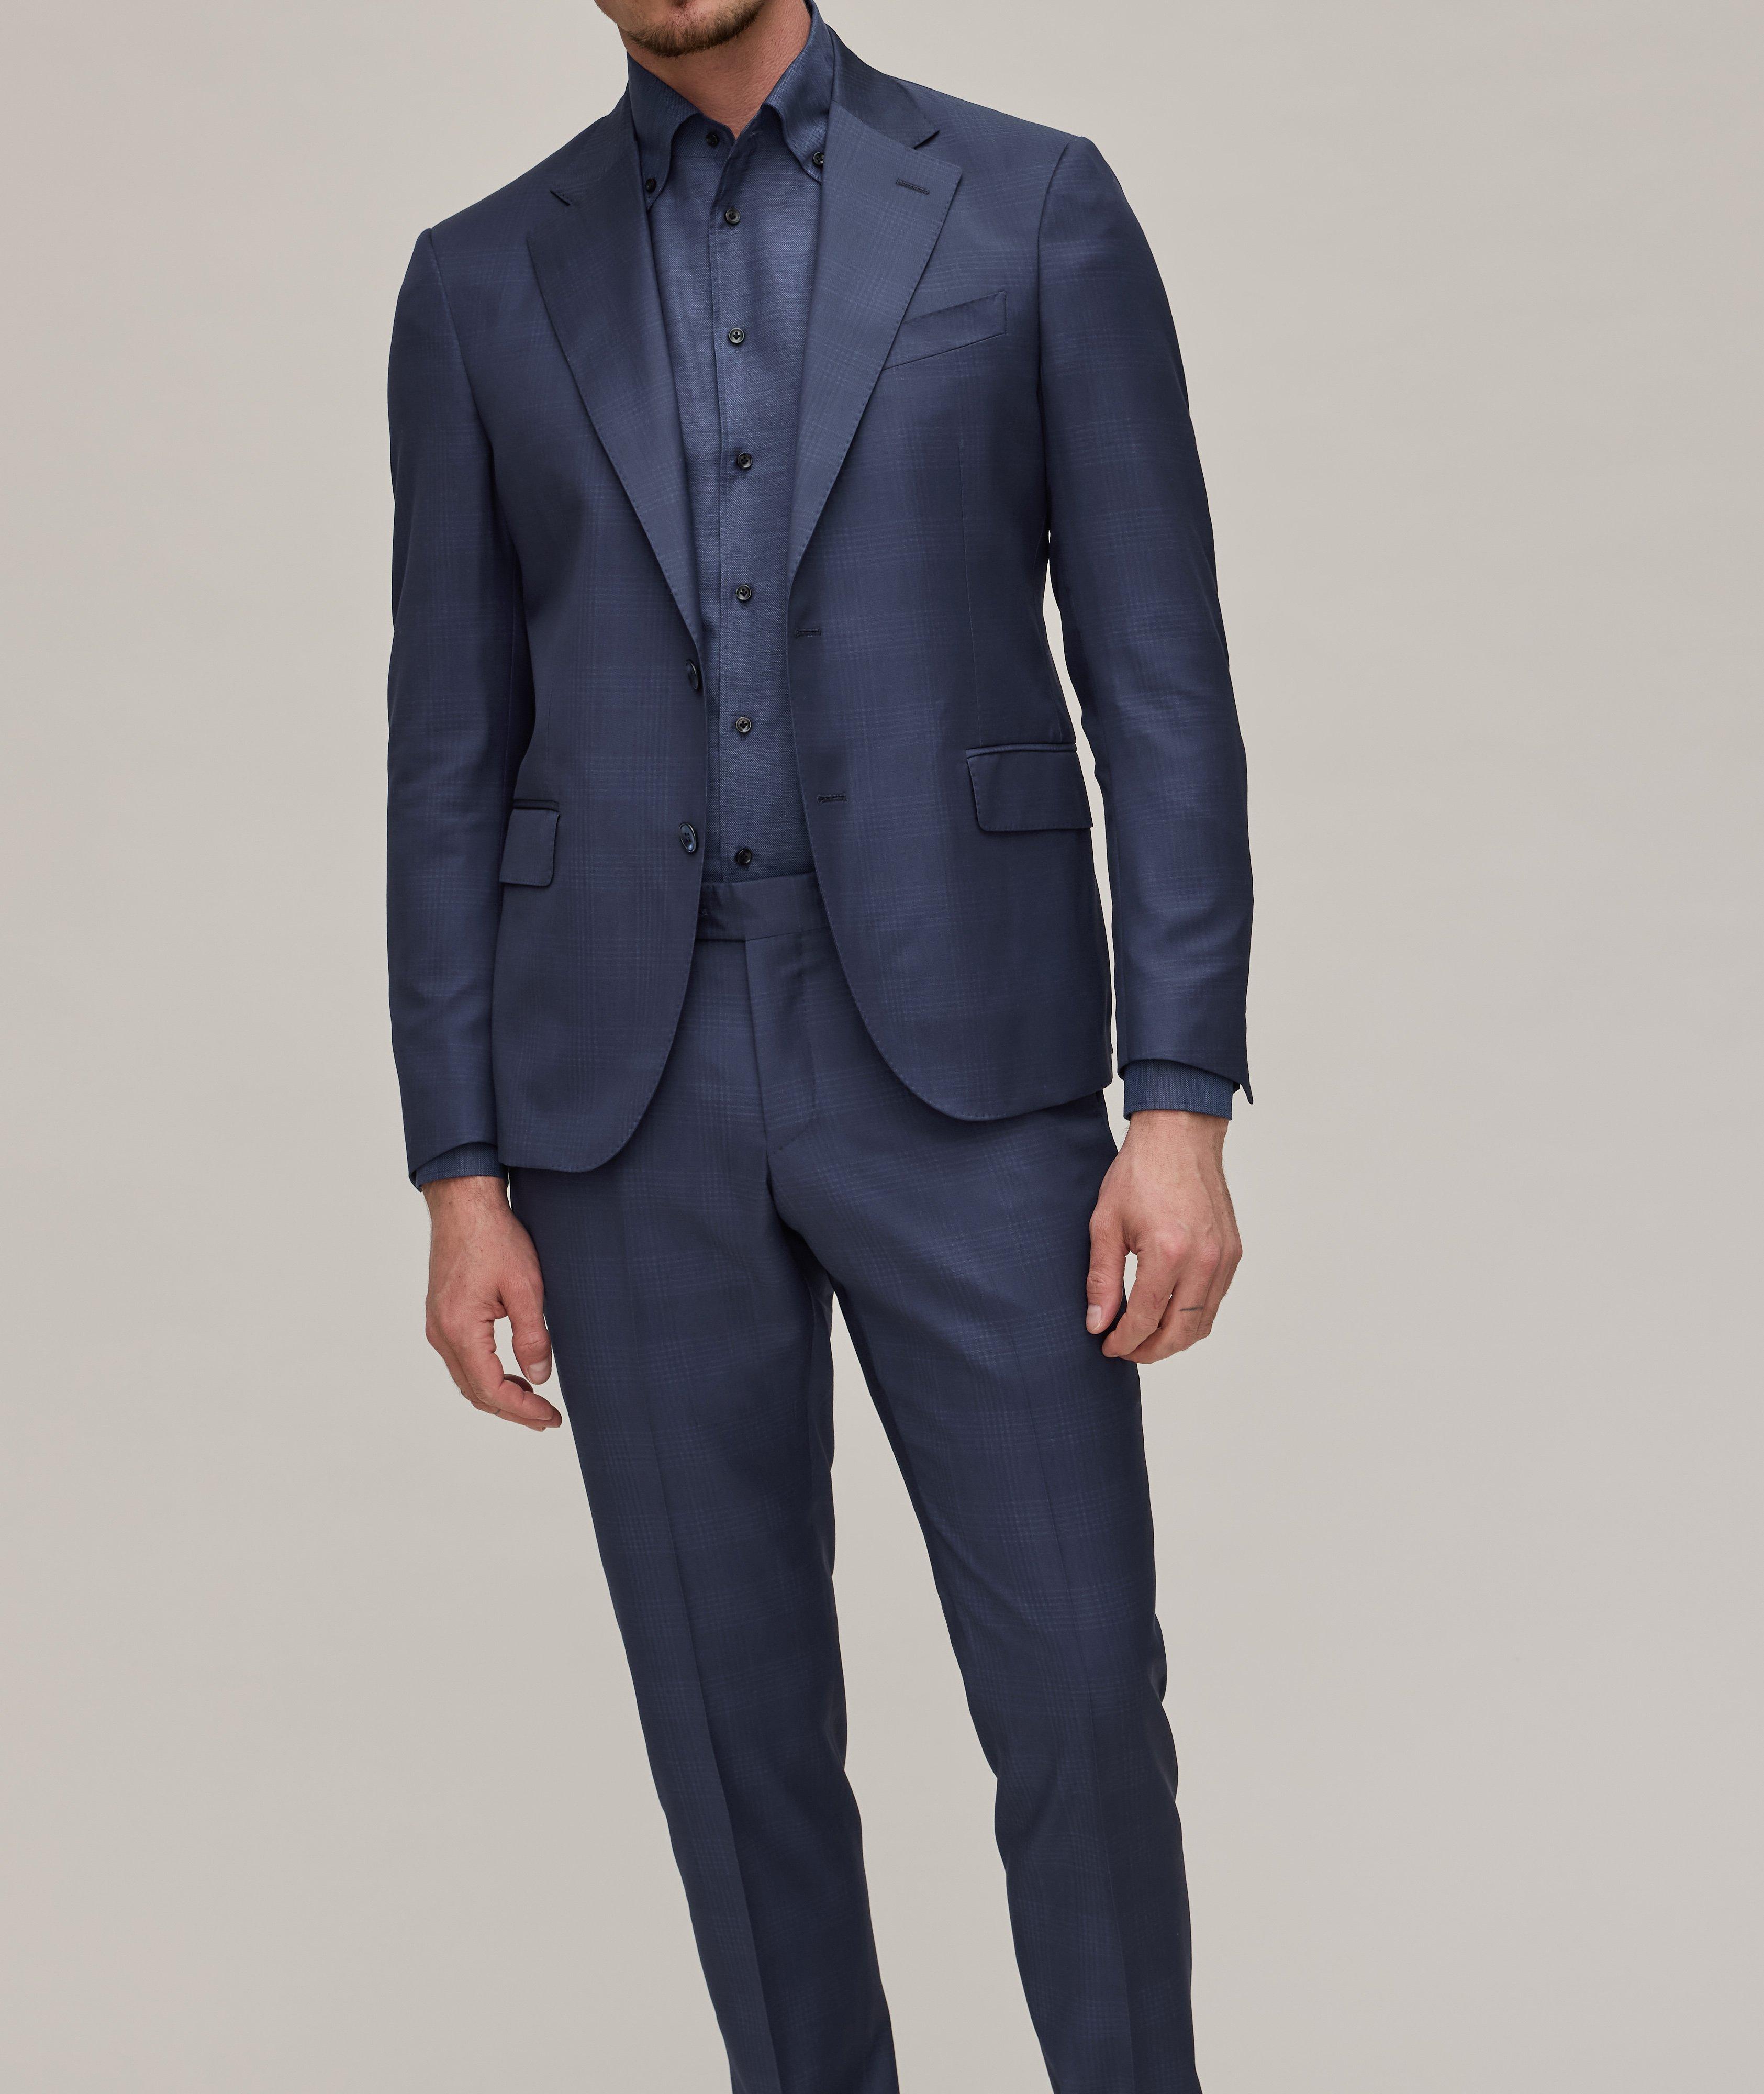 Tonal Plaid Suit image 1